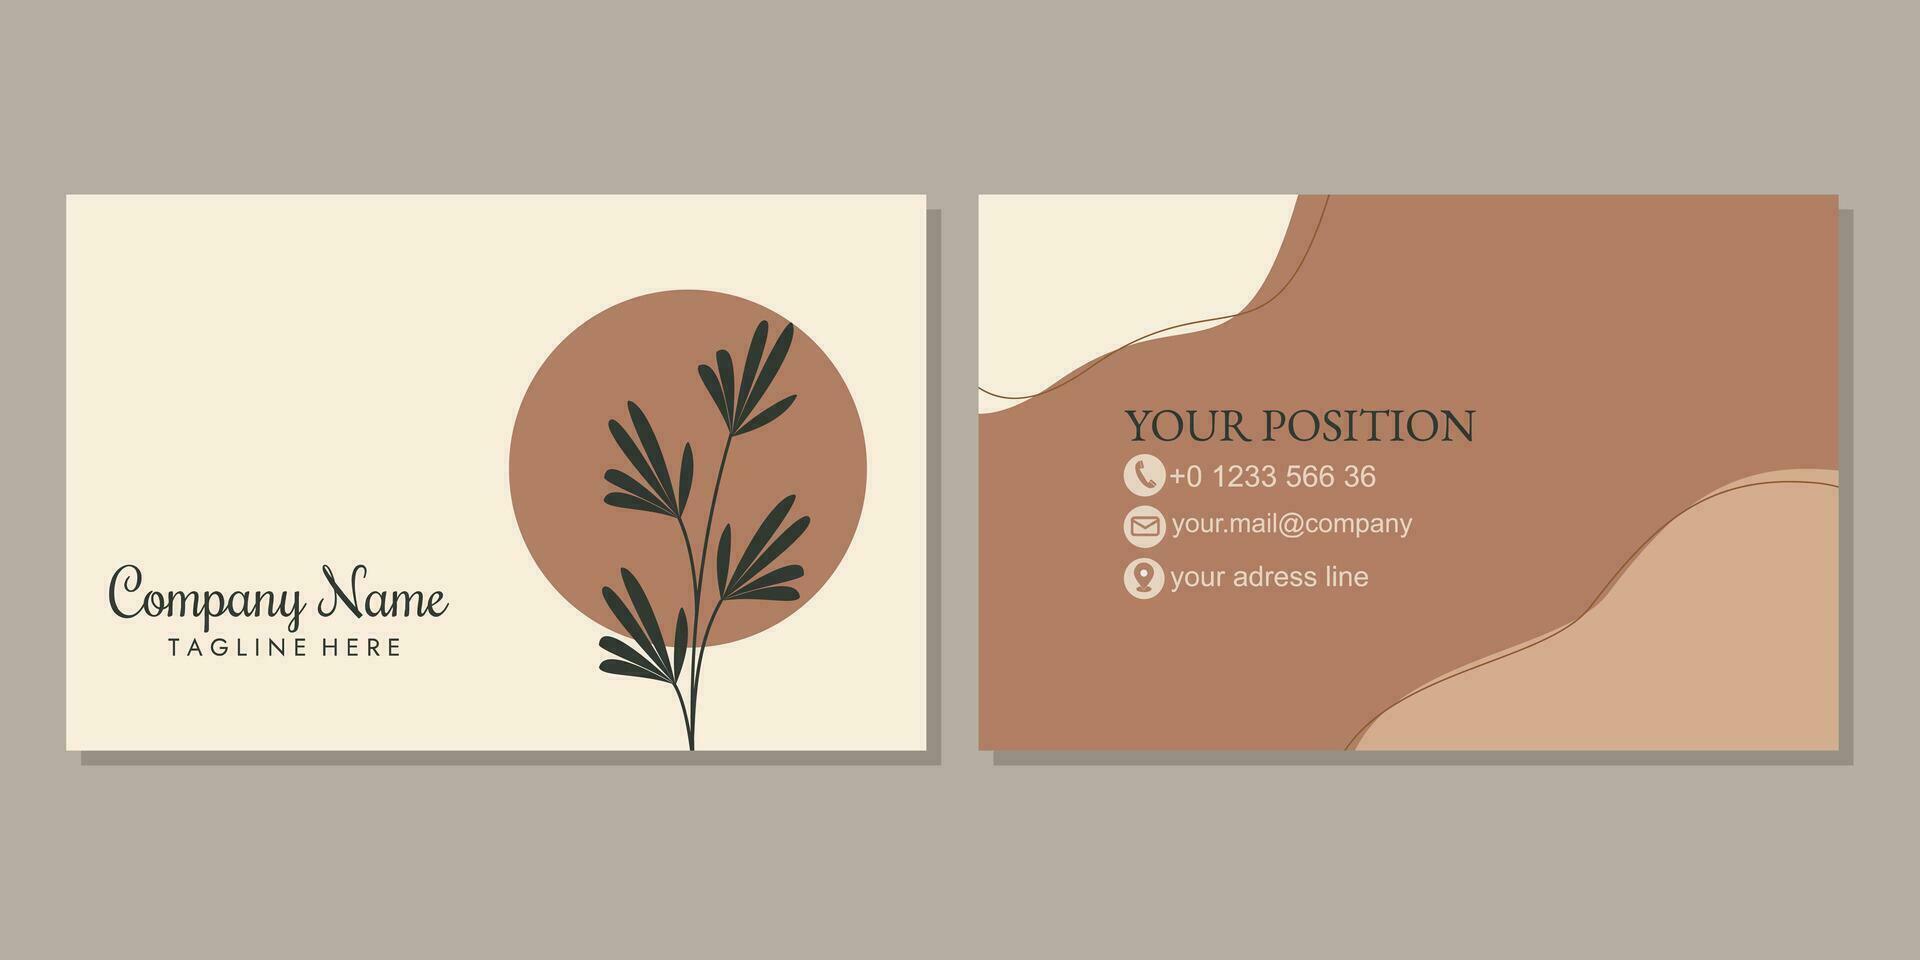 negocio tarjeta diseño para corporativo identidad. sencillo elegante tarjeta con mano dibujado floral elementos vector